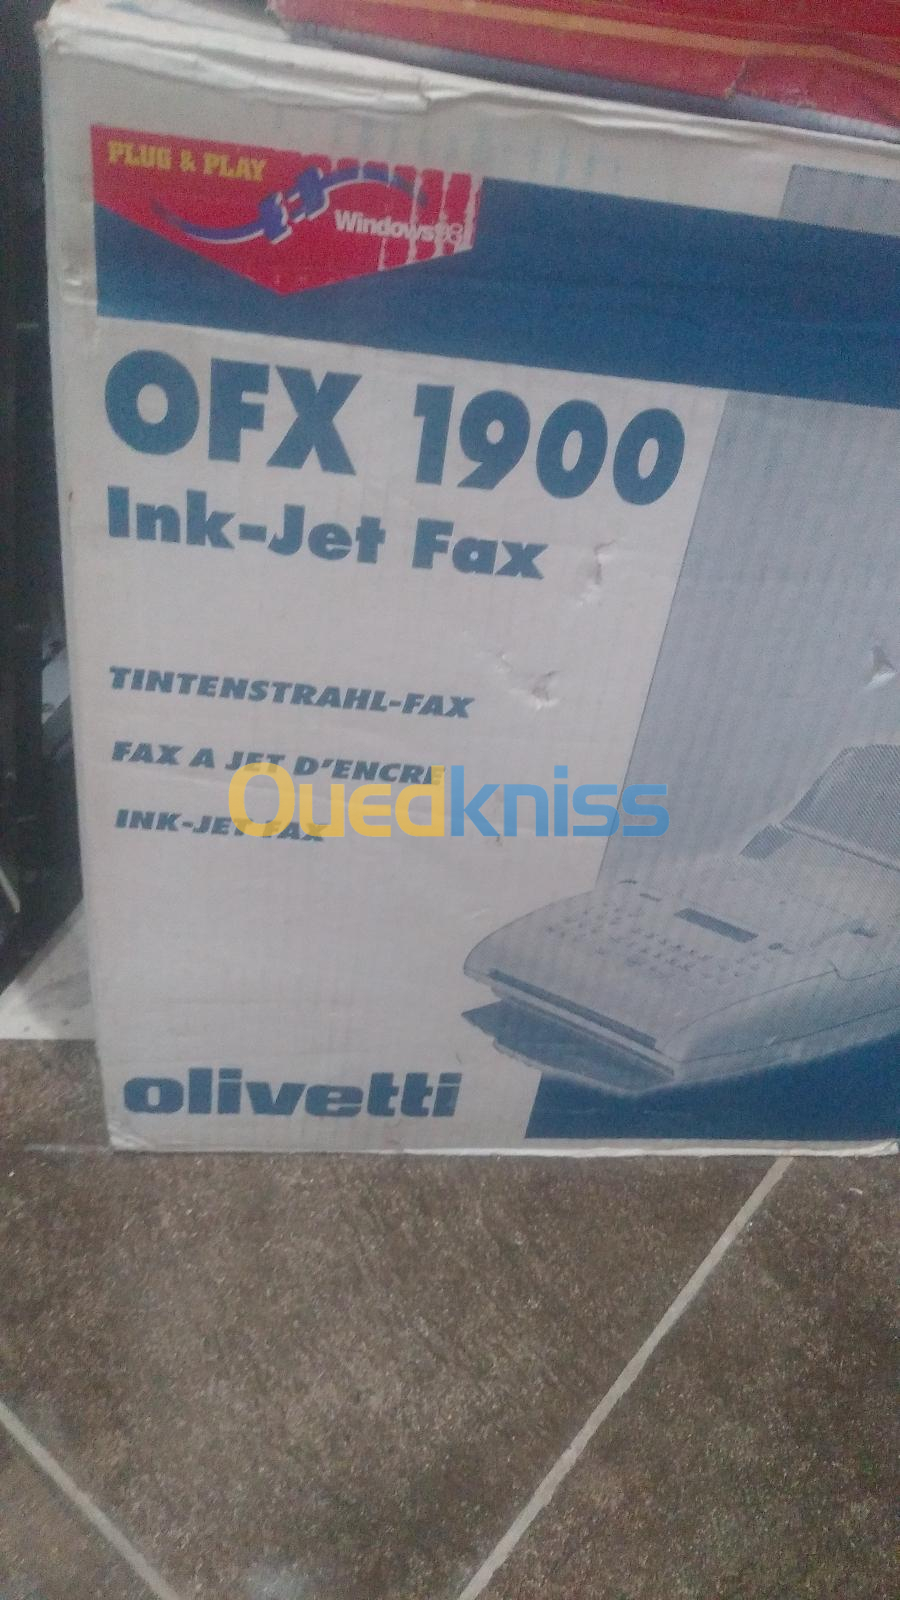  Olivetti OFX 1900